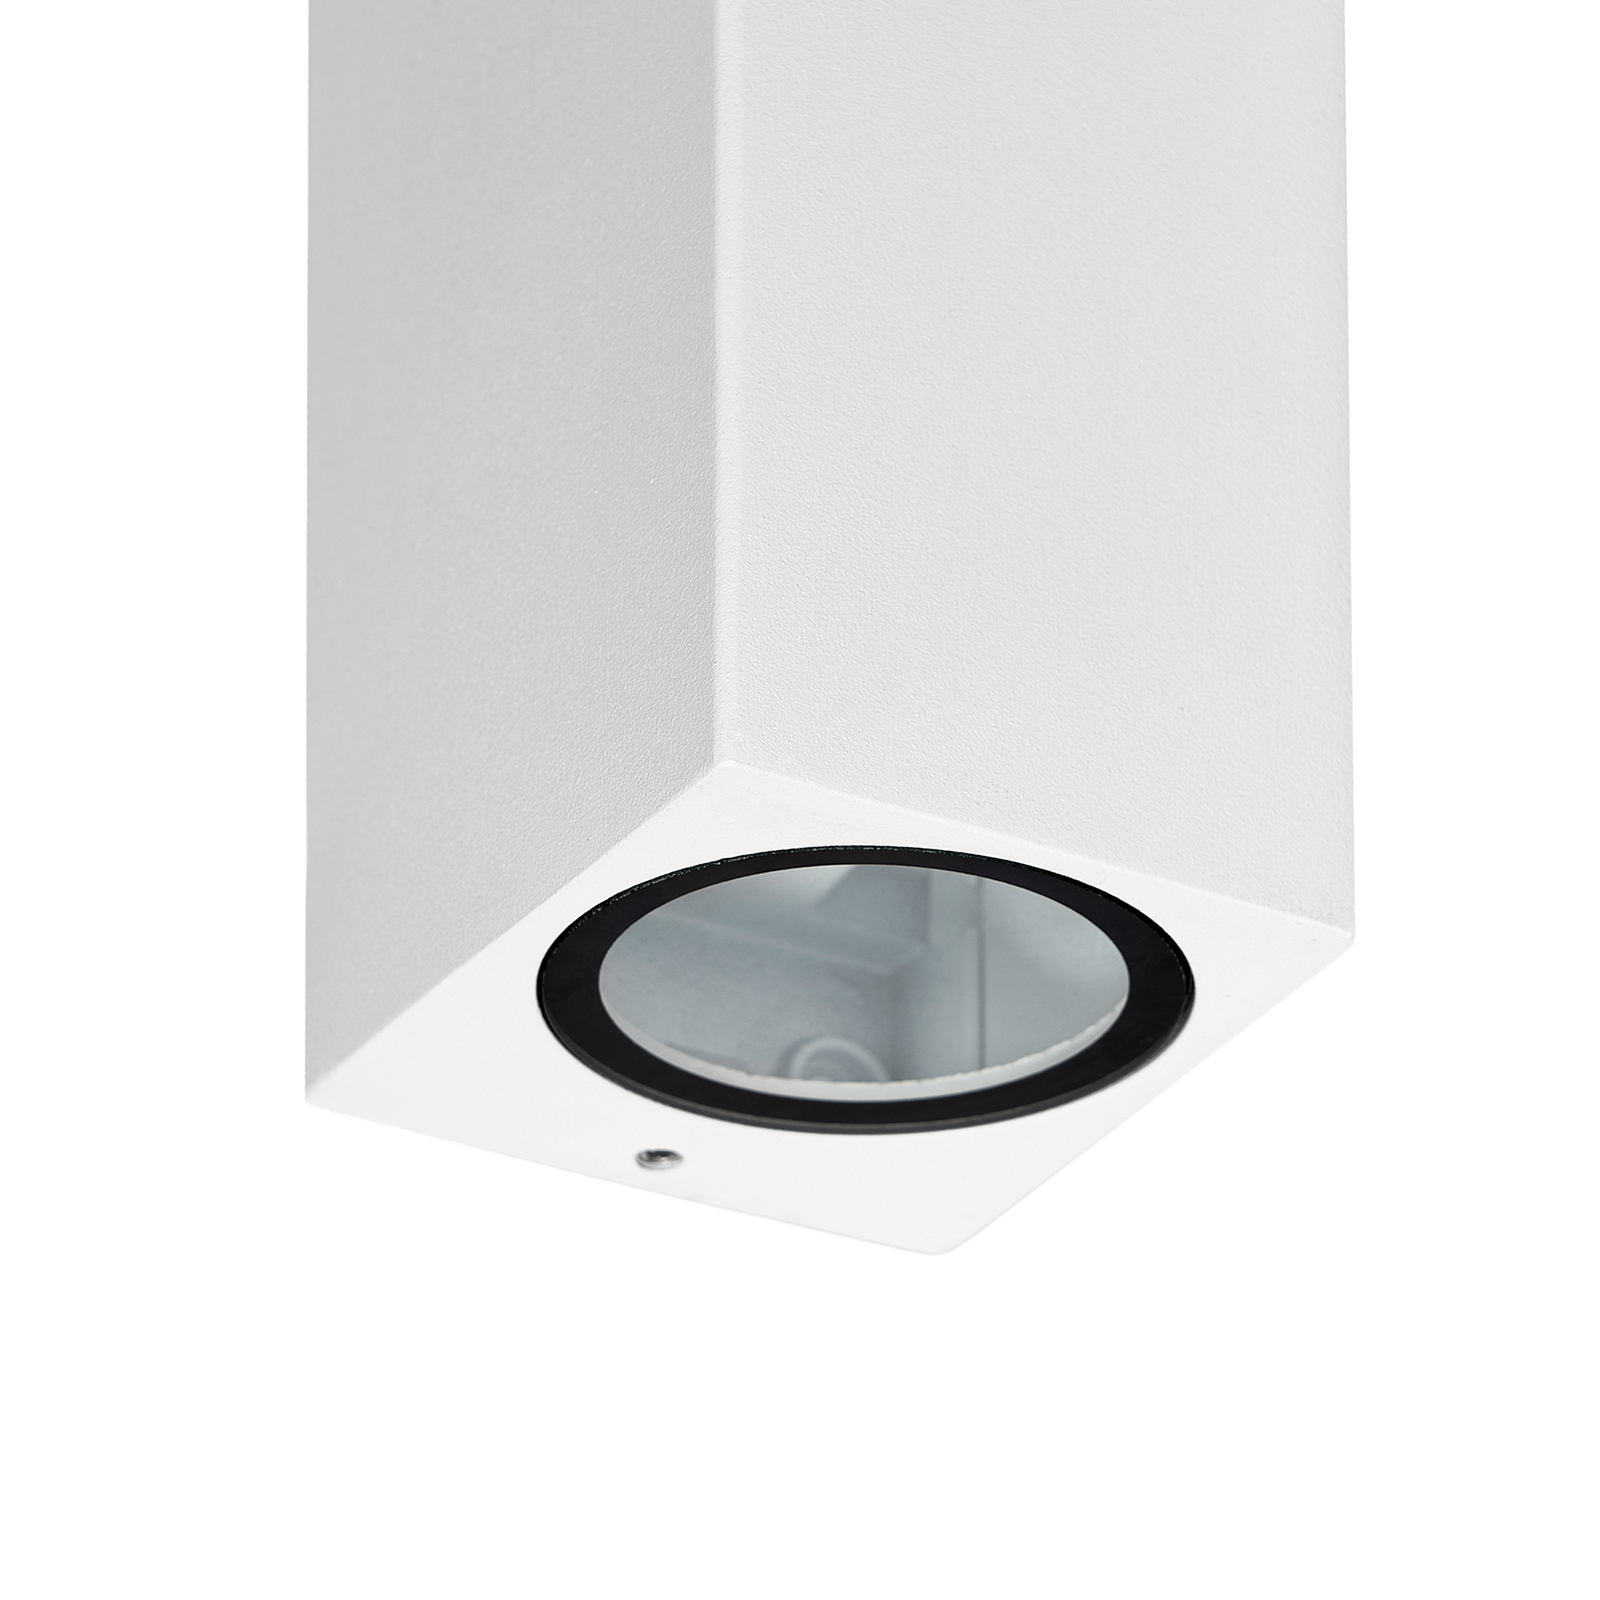 Prios vanjska zidna svjetiljka Tetje, bijela, kvadratna, 16 cm